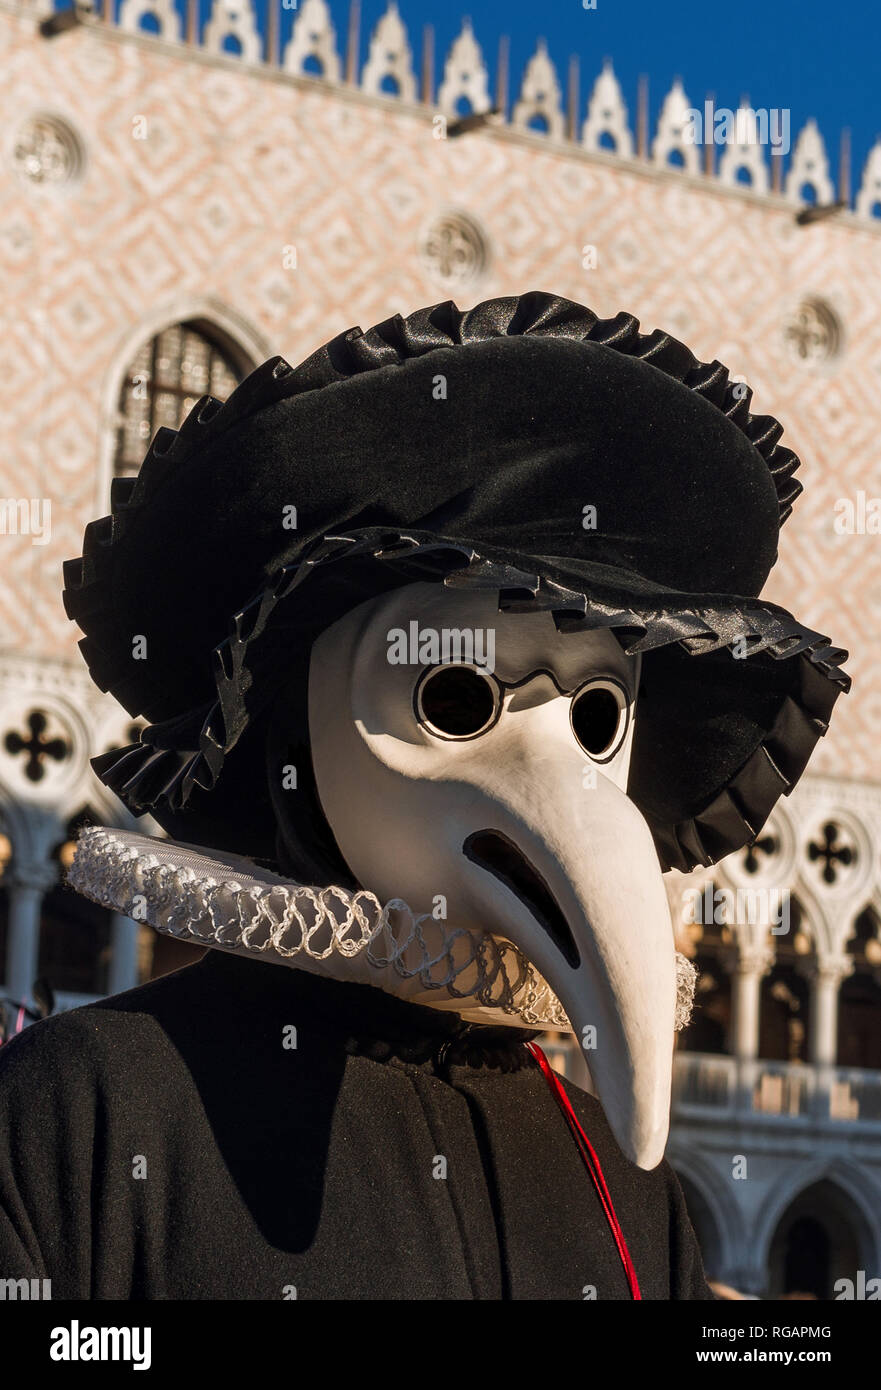 Pest Arzt Maske, Tracht im 17. Jahrhundert und historischen Charakter des Karneval in Venedig erfunden Stockfoto